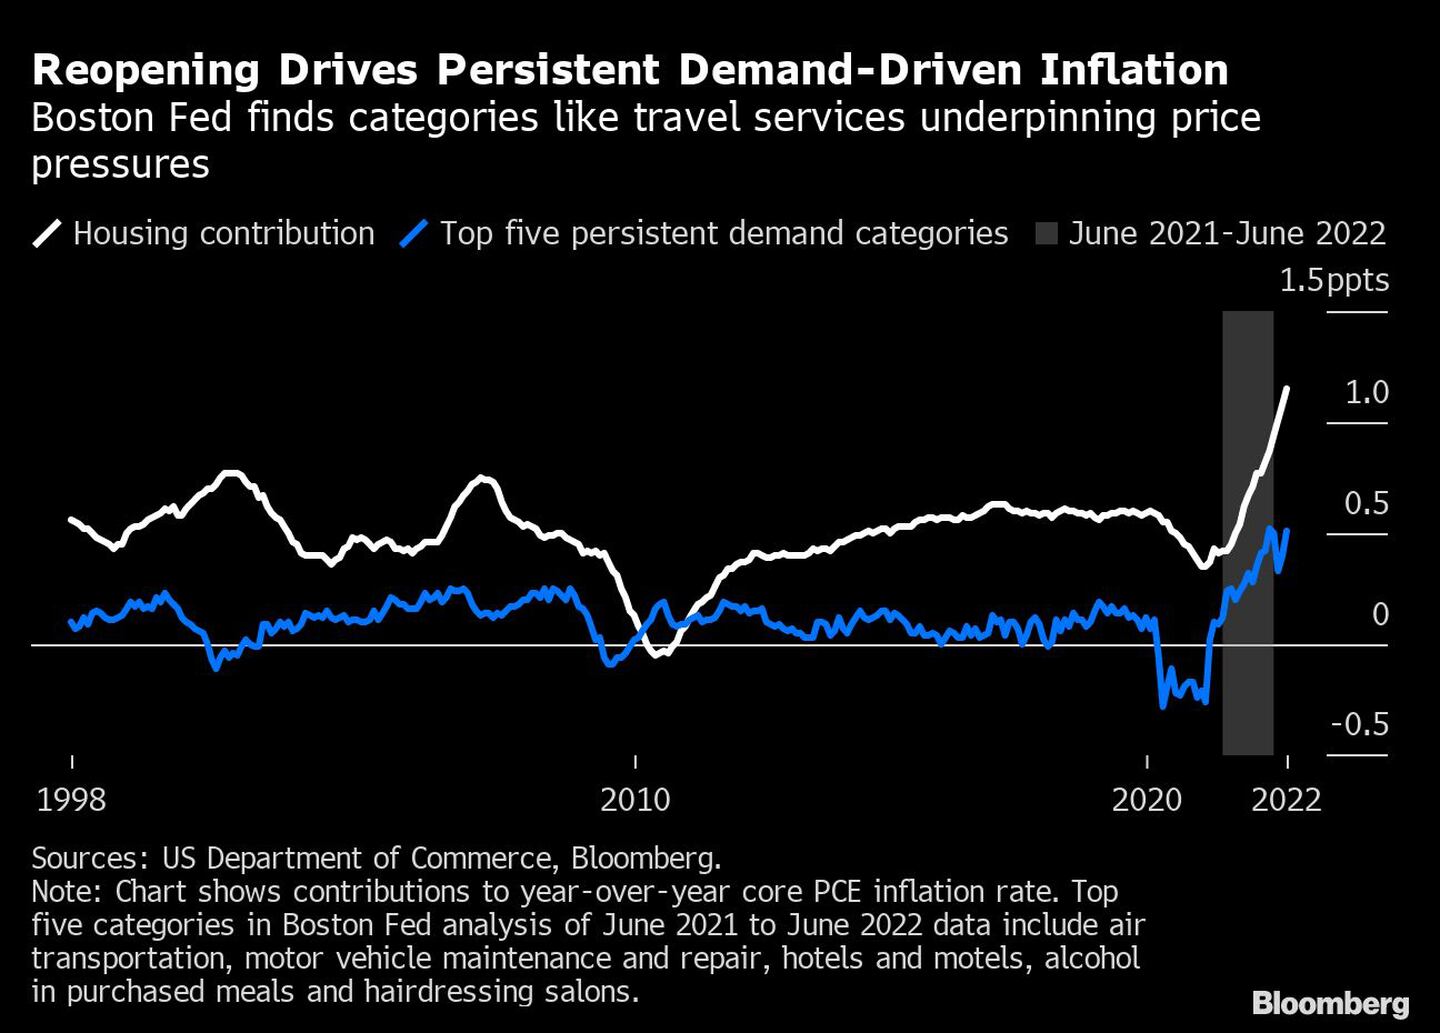 La reapertura impulsa la persistente inflación desde el lado de la demandadfd